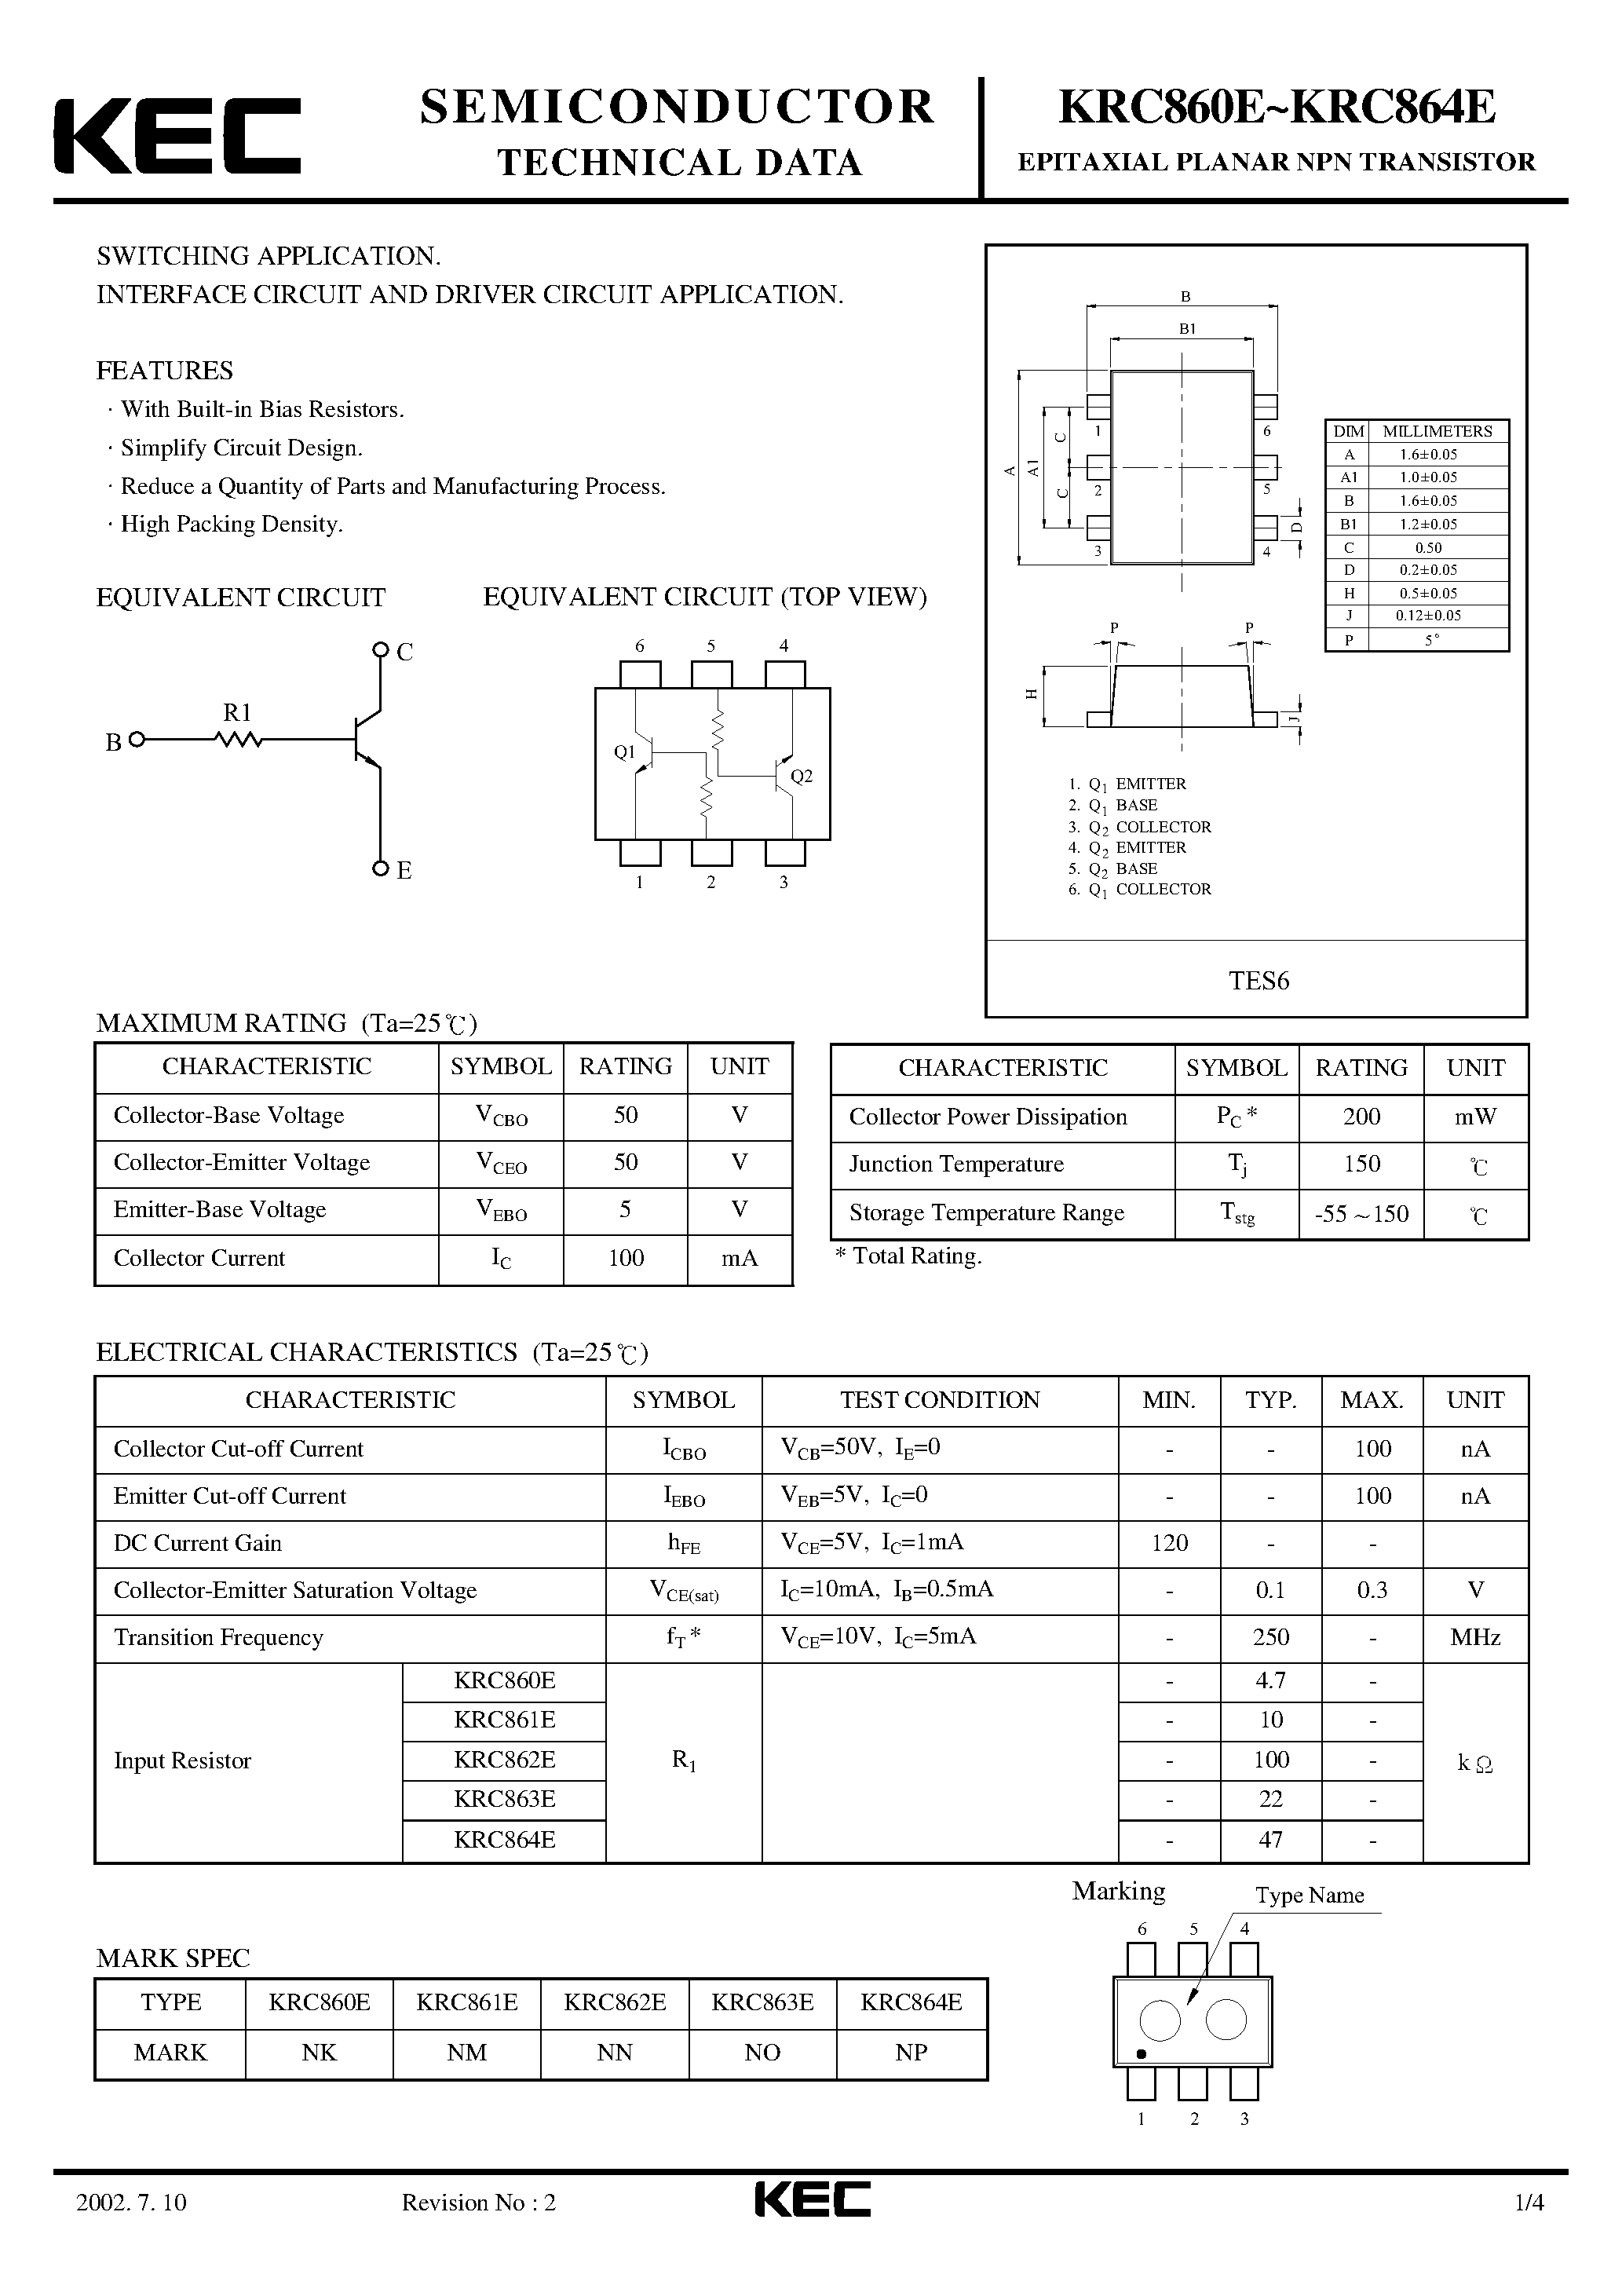 Datasheet KRC860E - (KRC860E - KRC864E) EPITAXIAL PLANAR NPN TRANSISTOR page 1